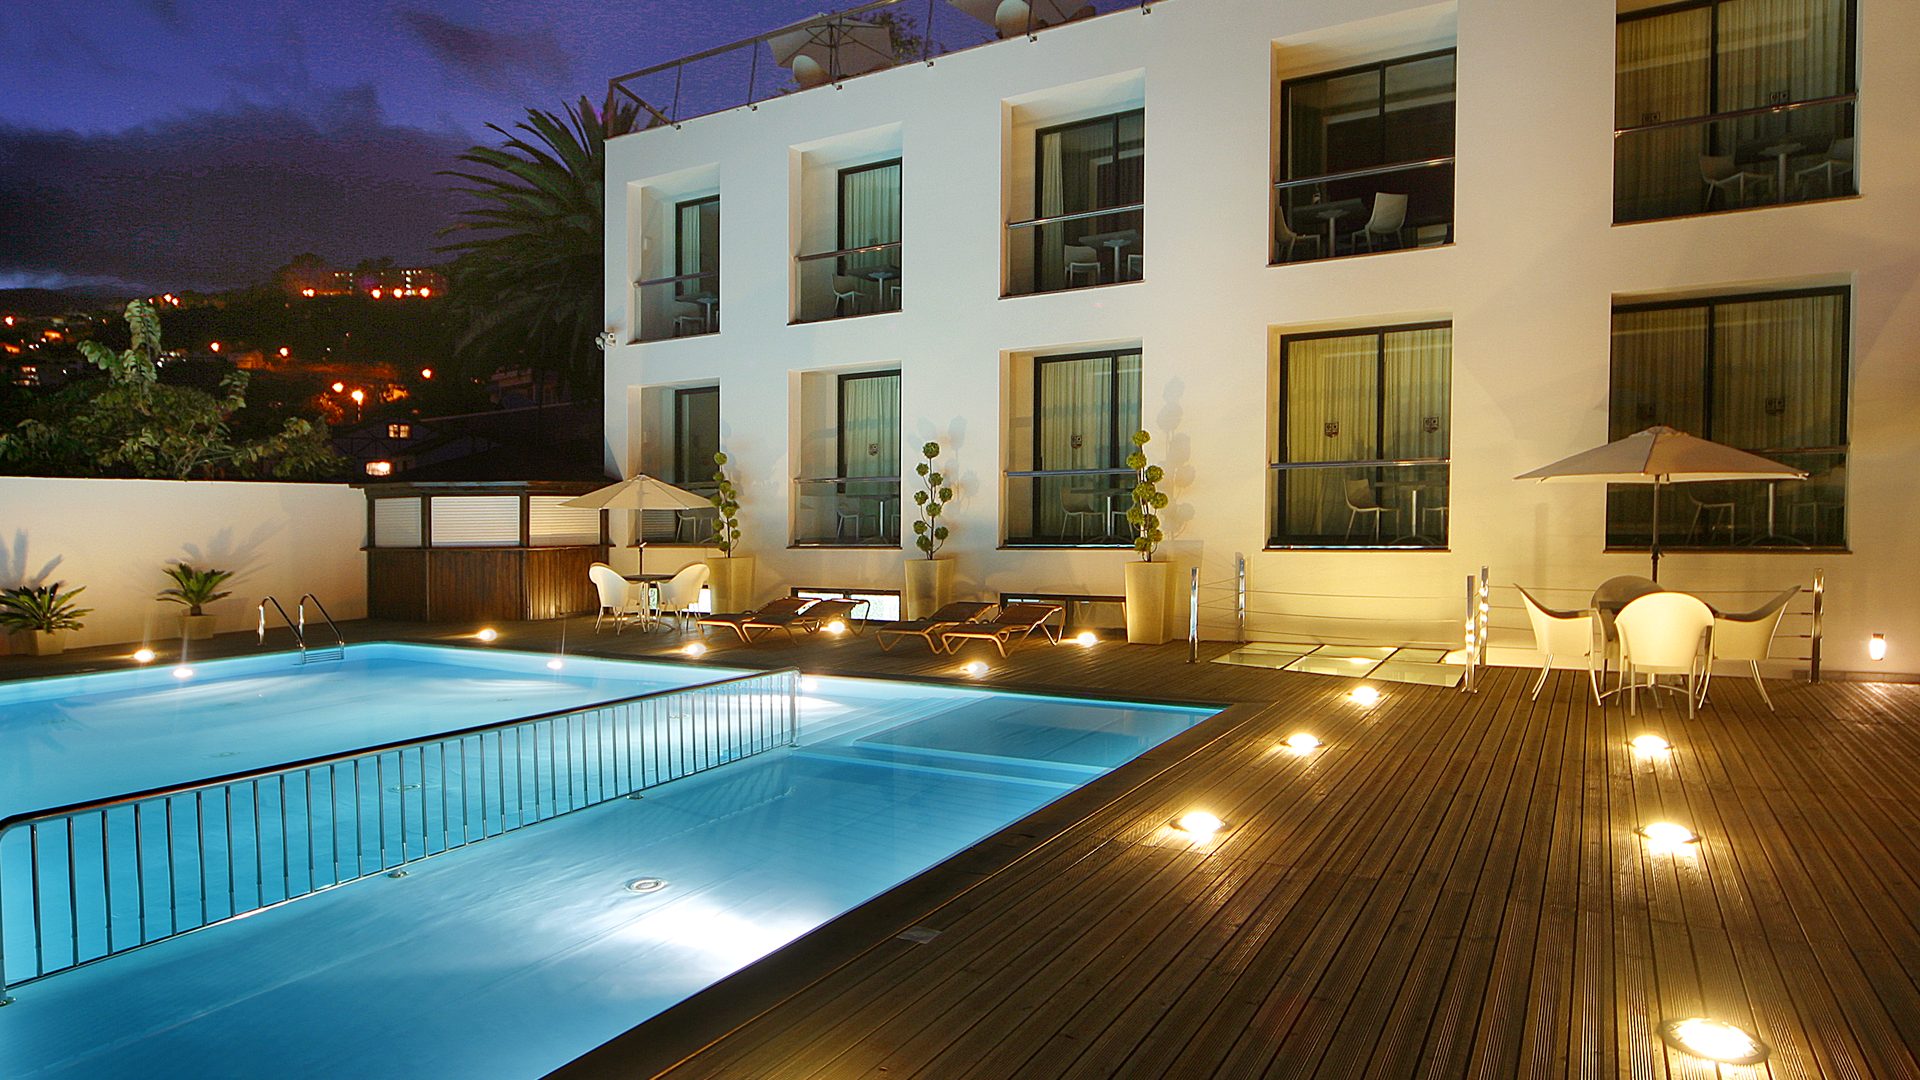 Swimmingpool på Hotel Quinta Mirabela - Madeira, Portugal - Kulturrejser